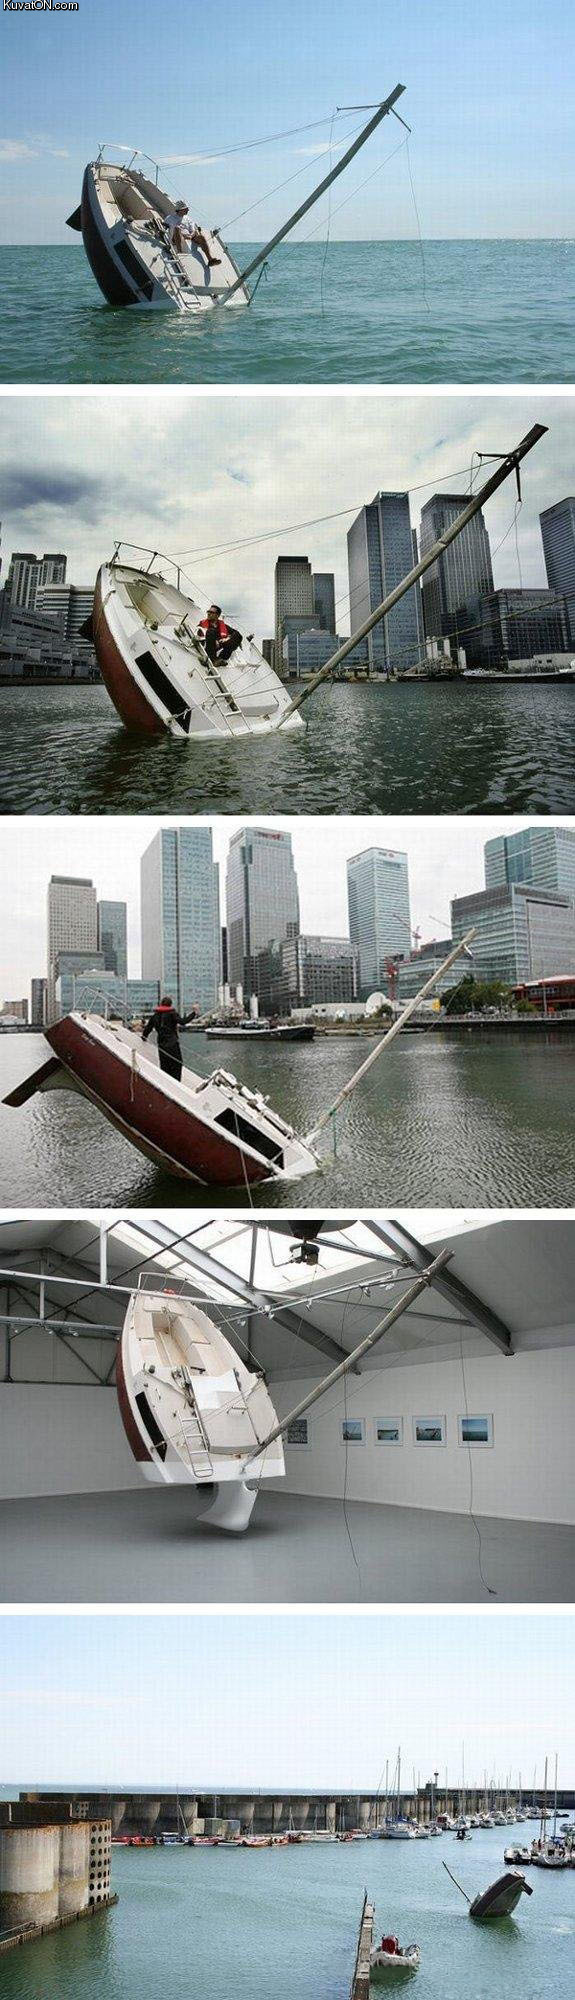 weirdest_boat_sculpture_ever.jpg